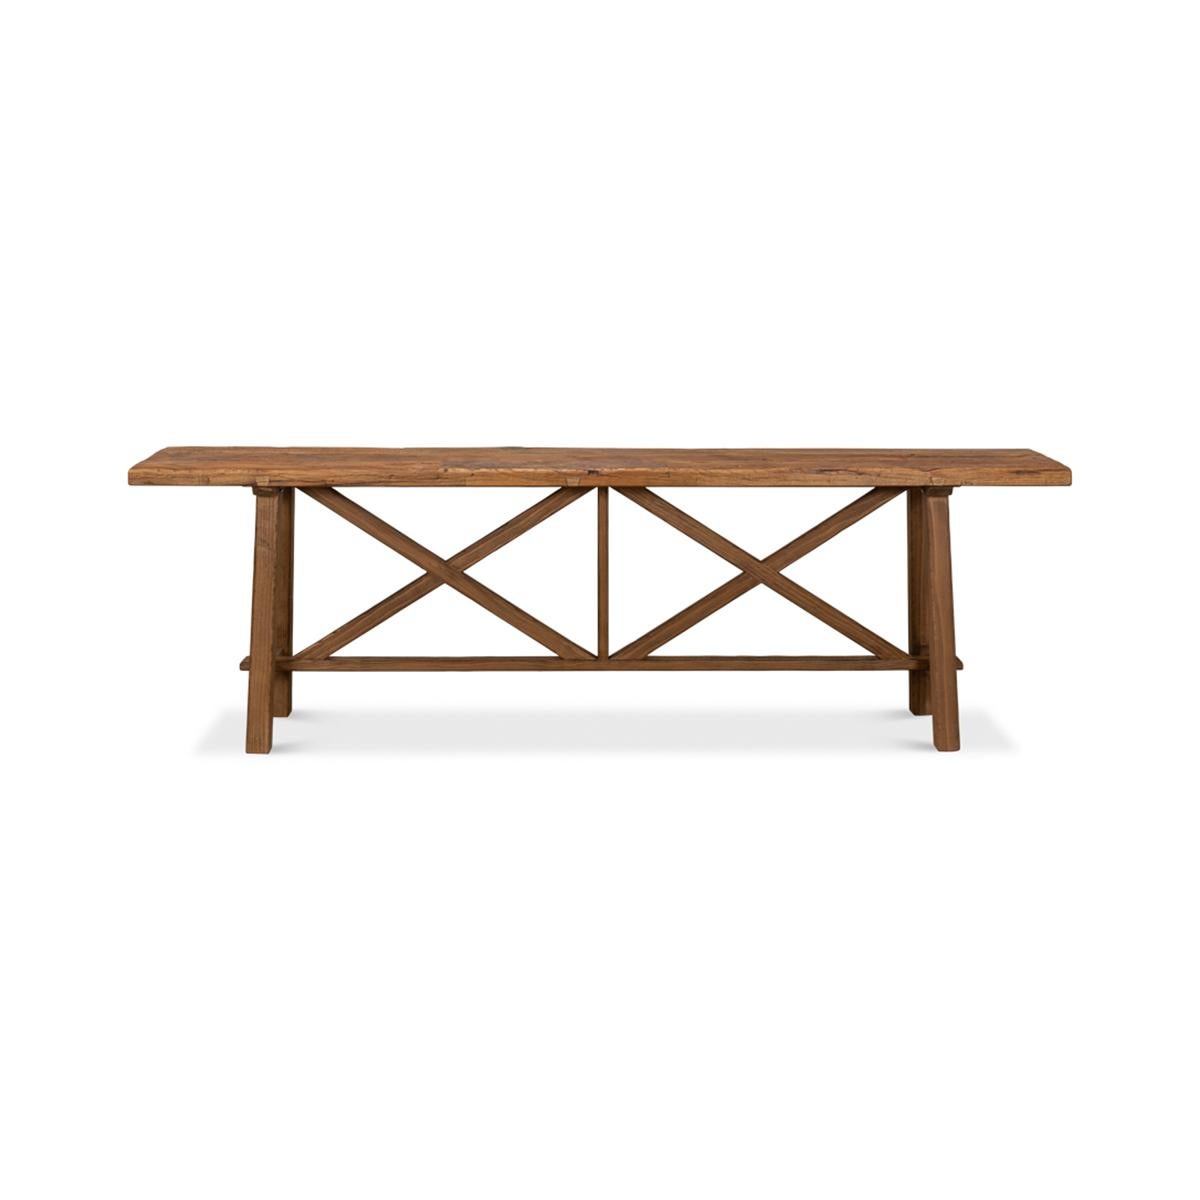 Une table console moderne en bois recyclé. Une pièce vraiment unique fabriquée à partir de planches de plancher vieilles de 100 ans. Le plateau en bois récupéré repose sur une base en pin avec un motif en double x. 

Dimensions : 93